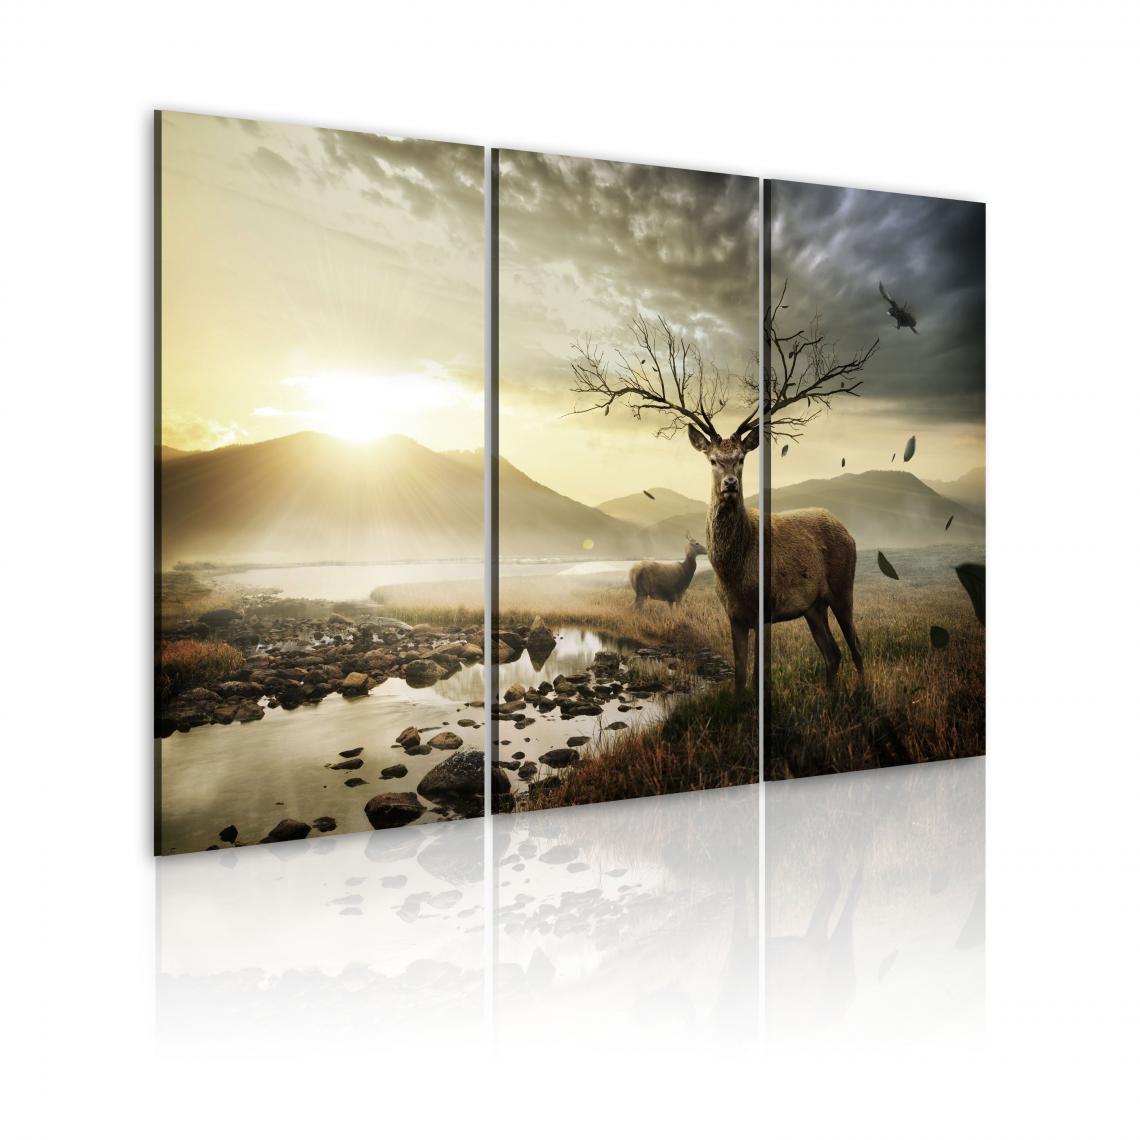 Decoshop26 - Tableau sur toile en 3 panneaux décoration murale image imprimée cadre en bois à suspendre Cerfs avec un bois 120x80 cm 11_0009445 - Tableaux, peintures